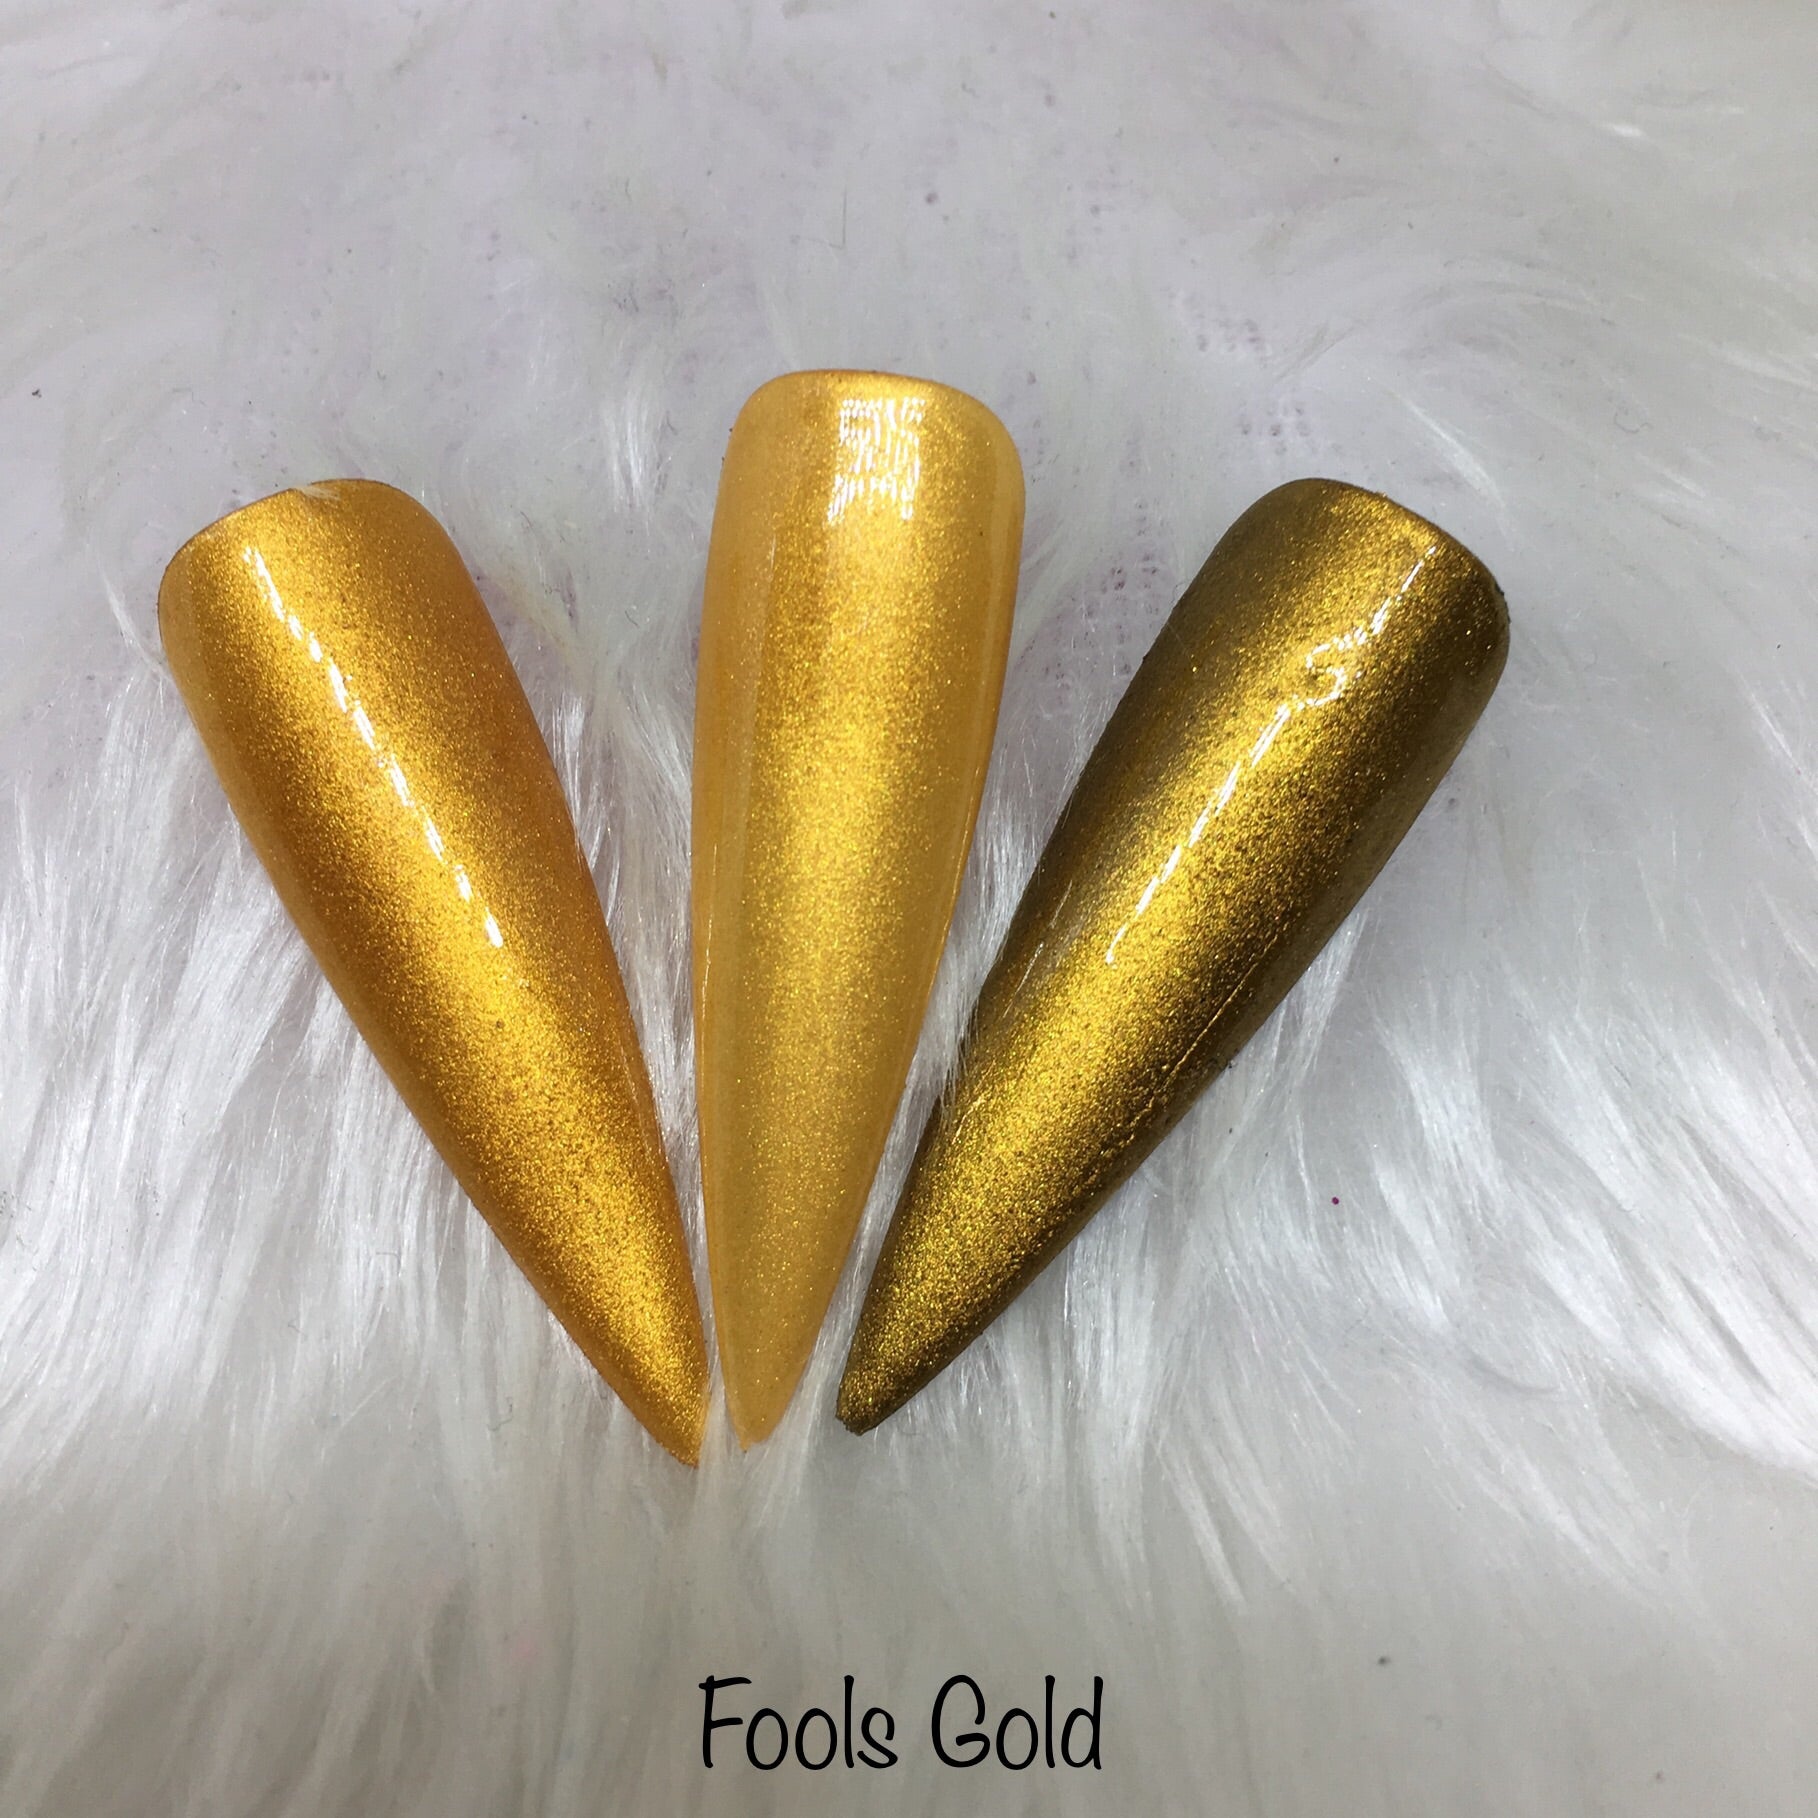 Fools Gold-Pigments-Incandescent Shine Ltd